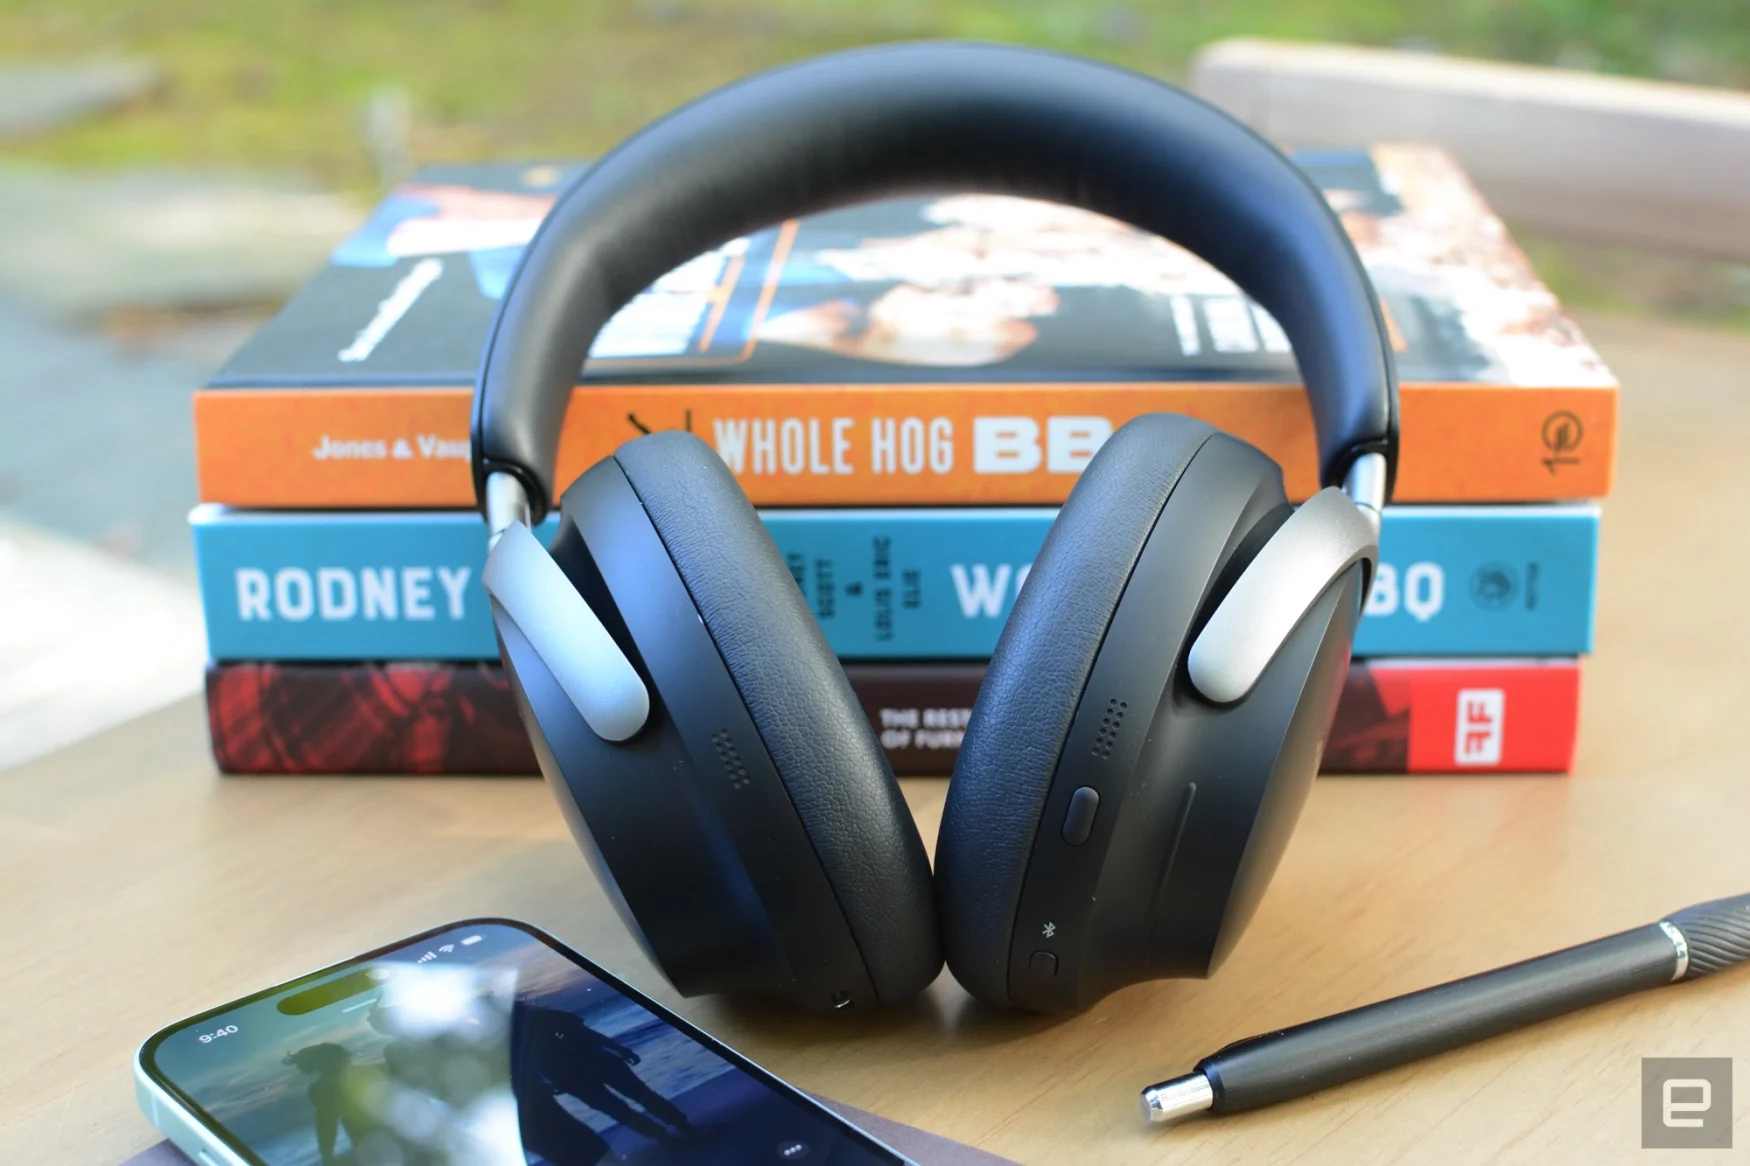 Bose QuietComfort Ultra Headphones review